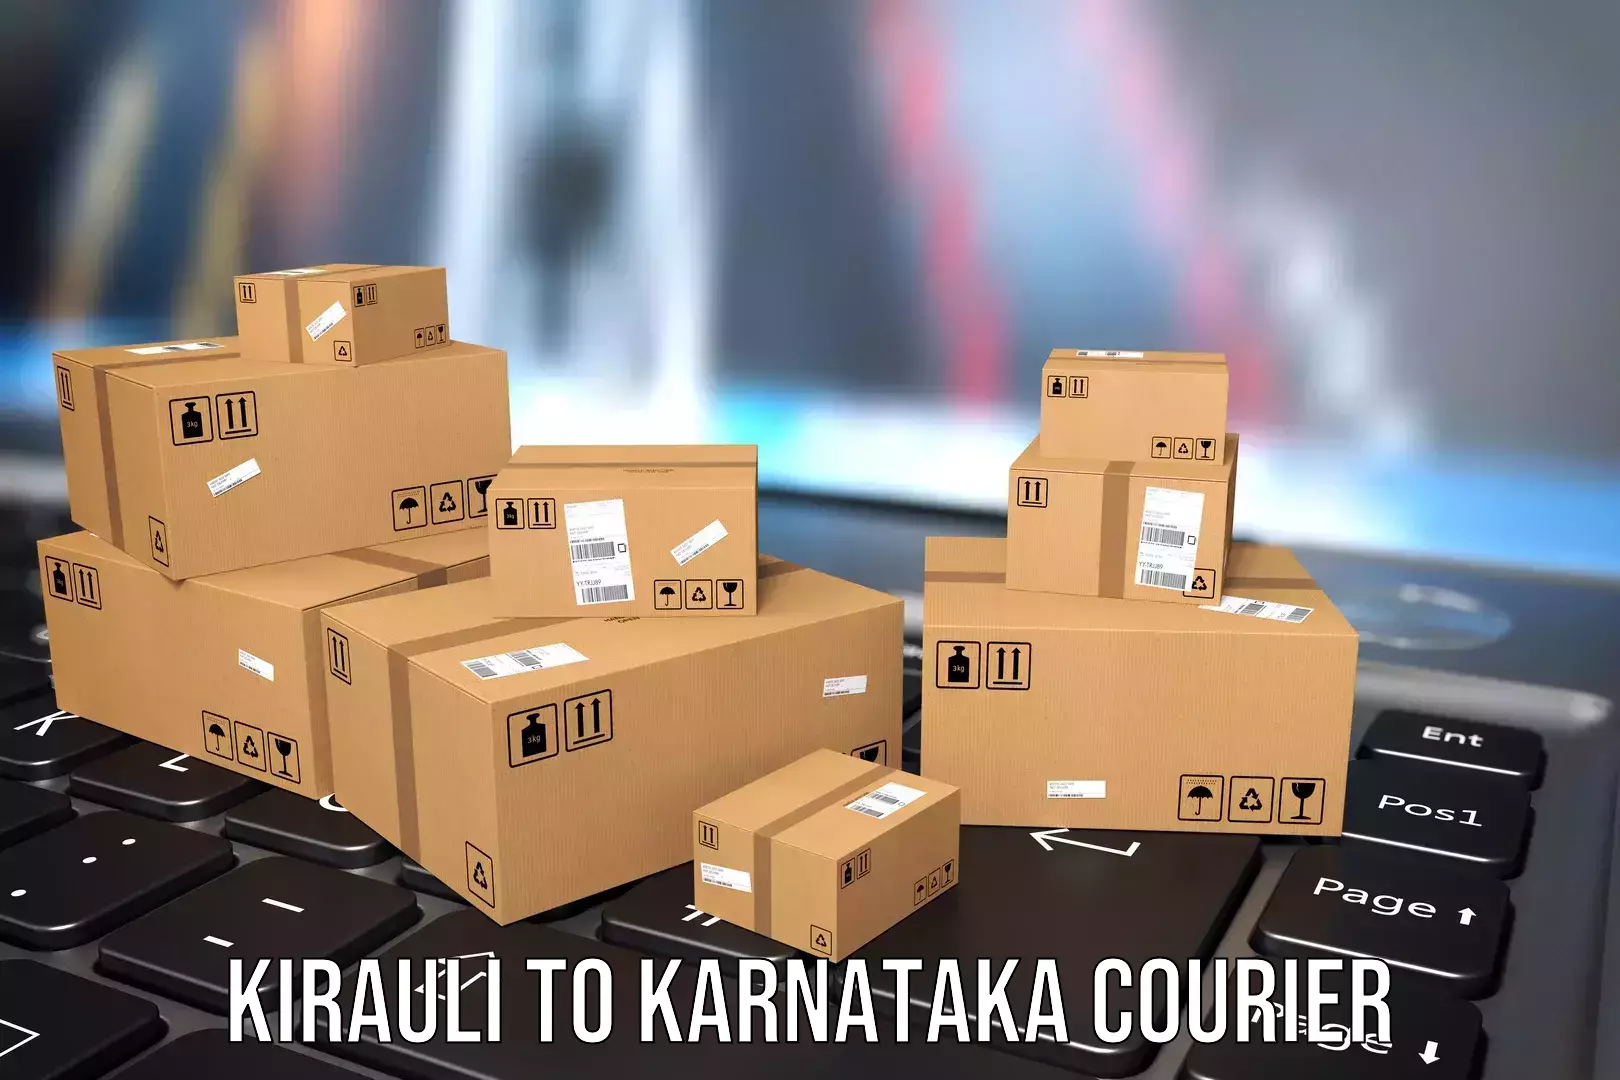 Baggage handling services Kirauli to Karnataka